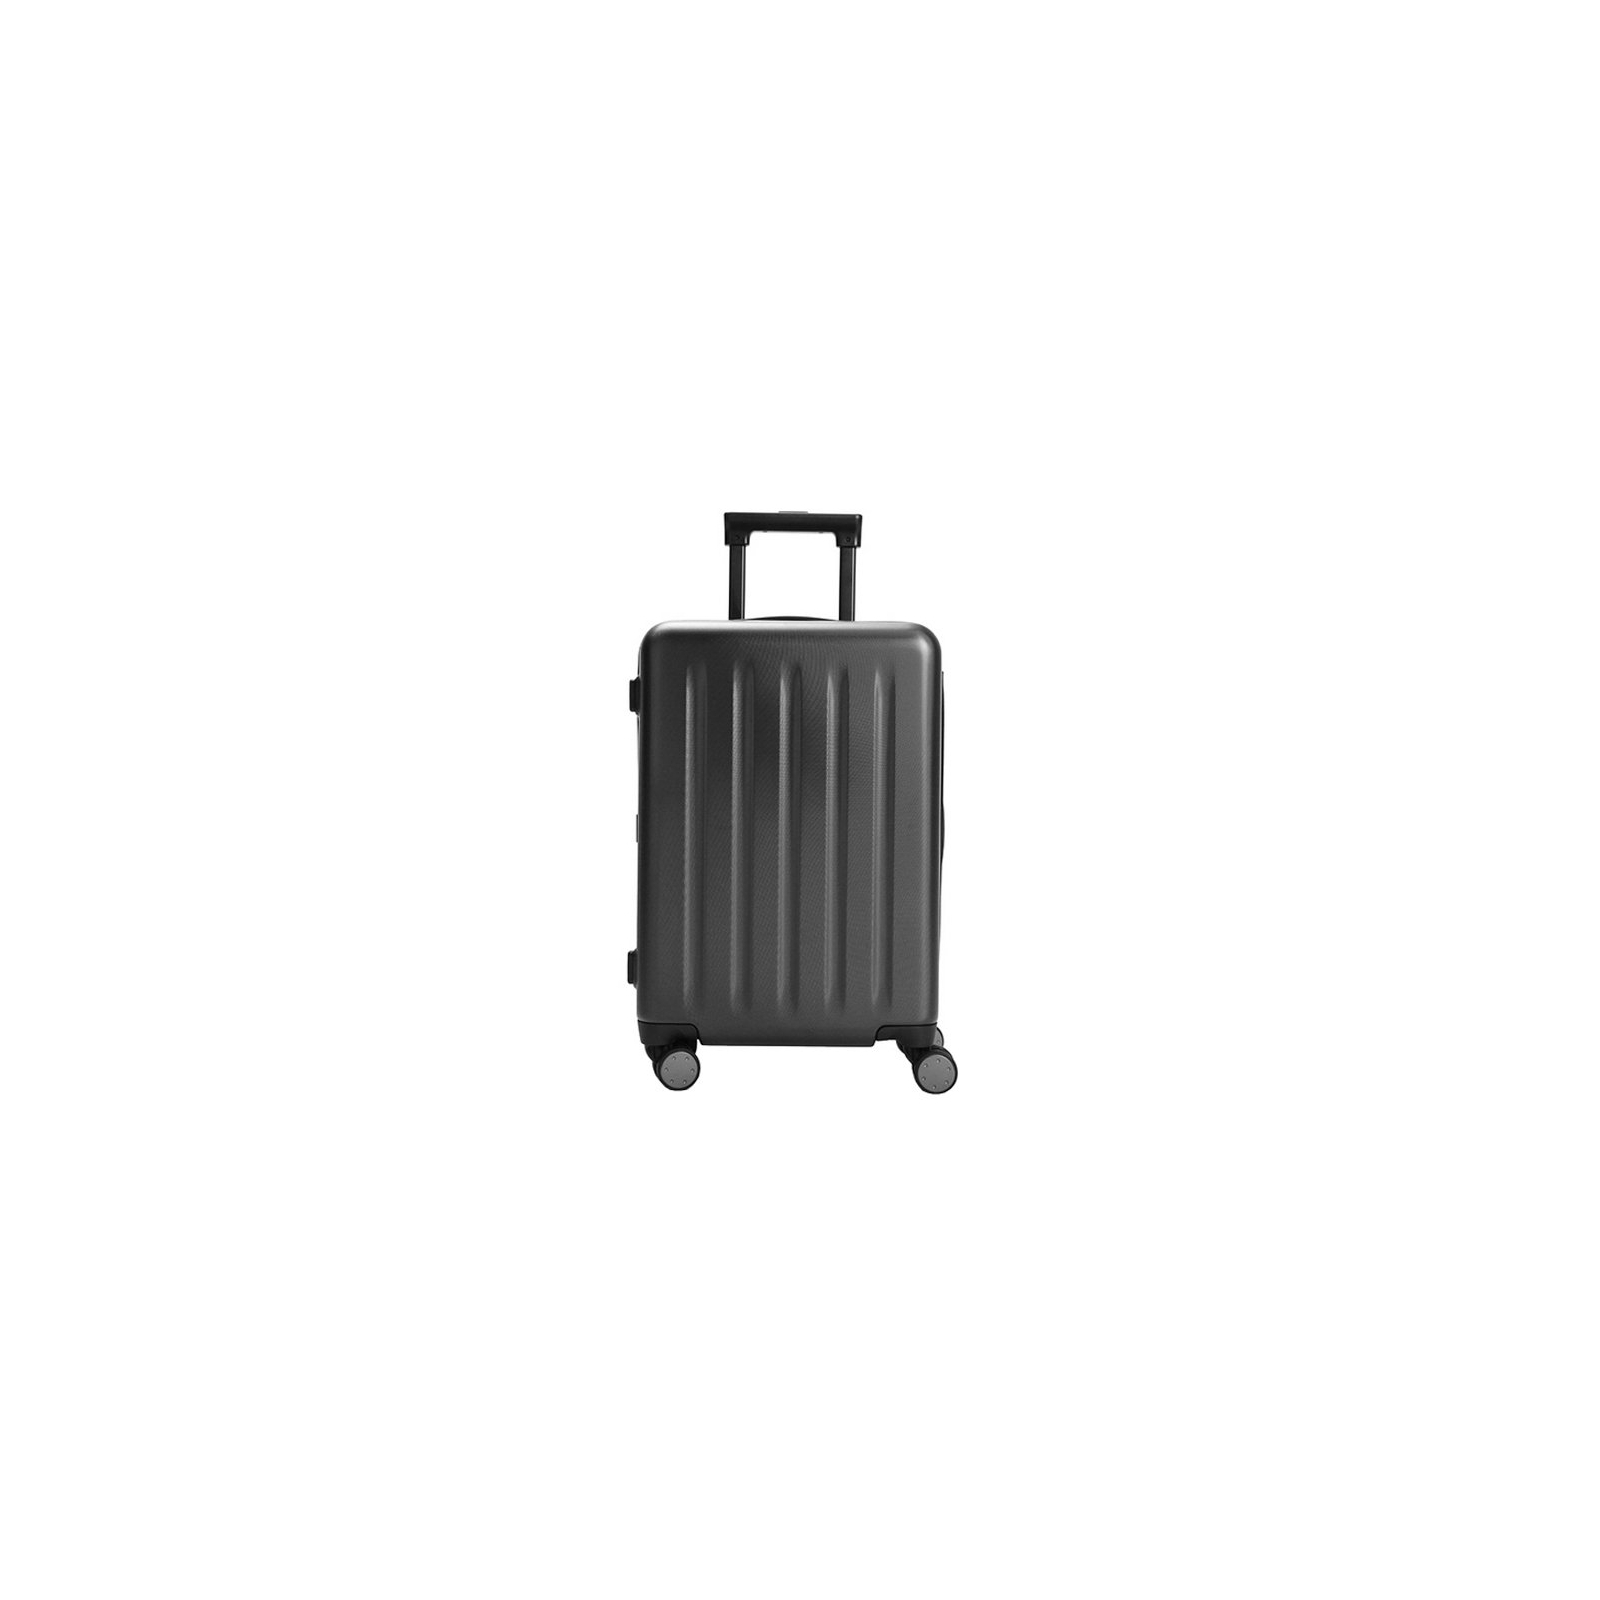 Валіза Xiaomi Ninetygo PC Luggage 24'' Wine Red (6972619238768)